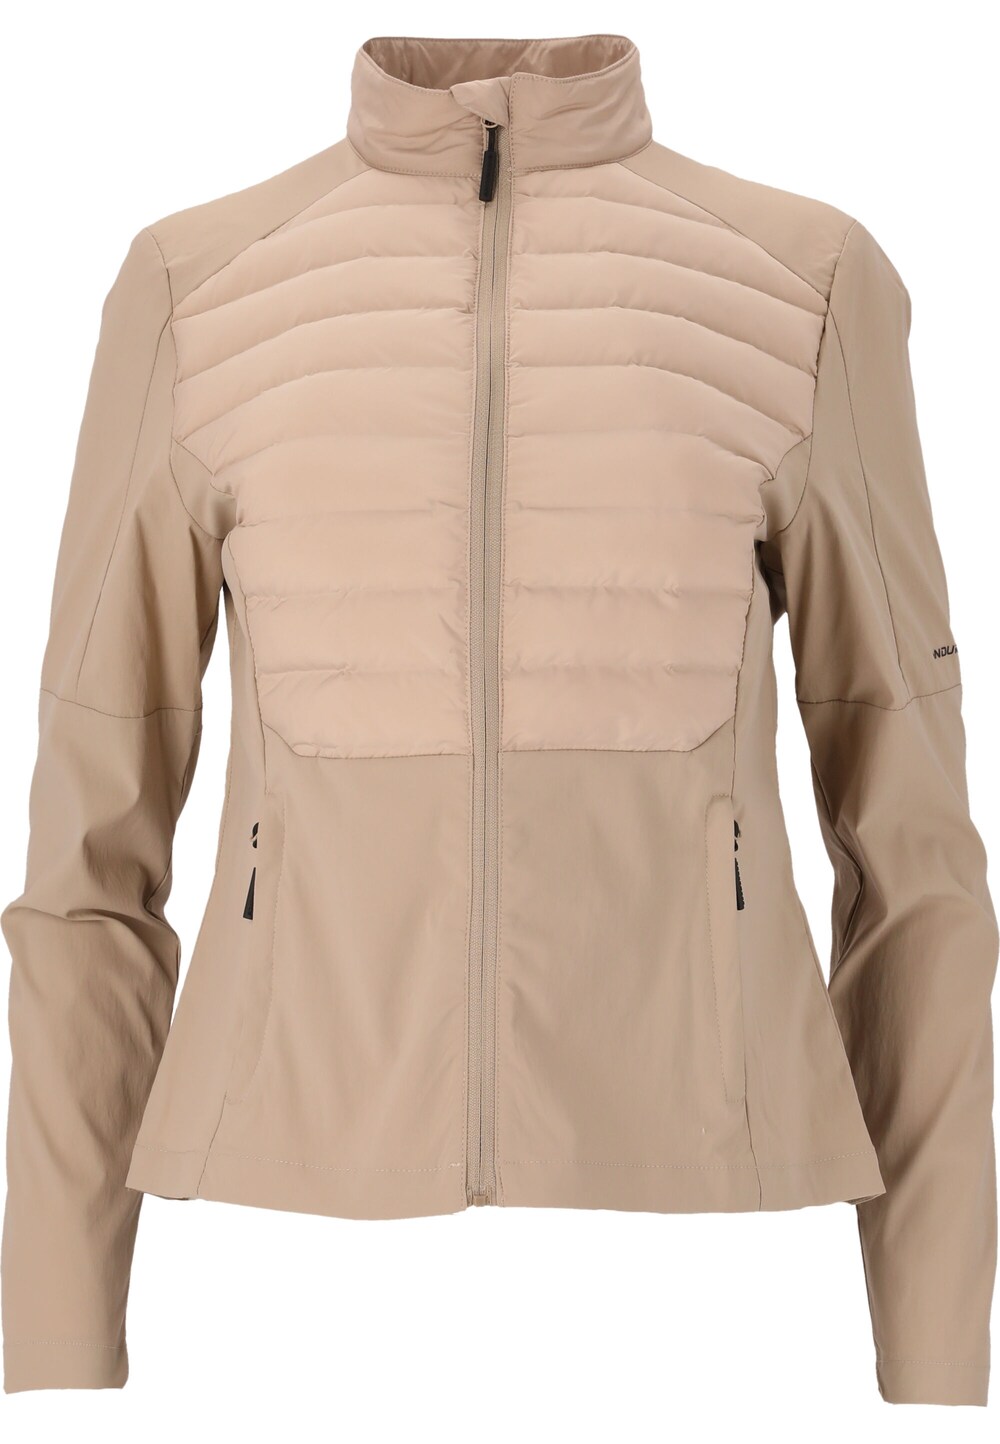 Спортивная куртка Endurance Beistyla, серо-коричневый водонепроницаемая куртка endurance серо коричневый